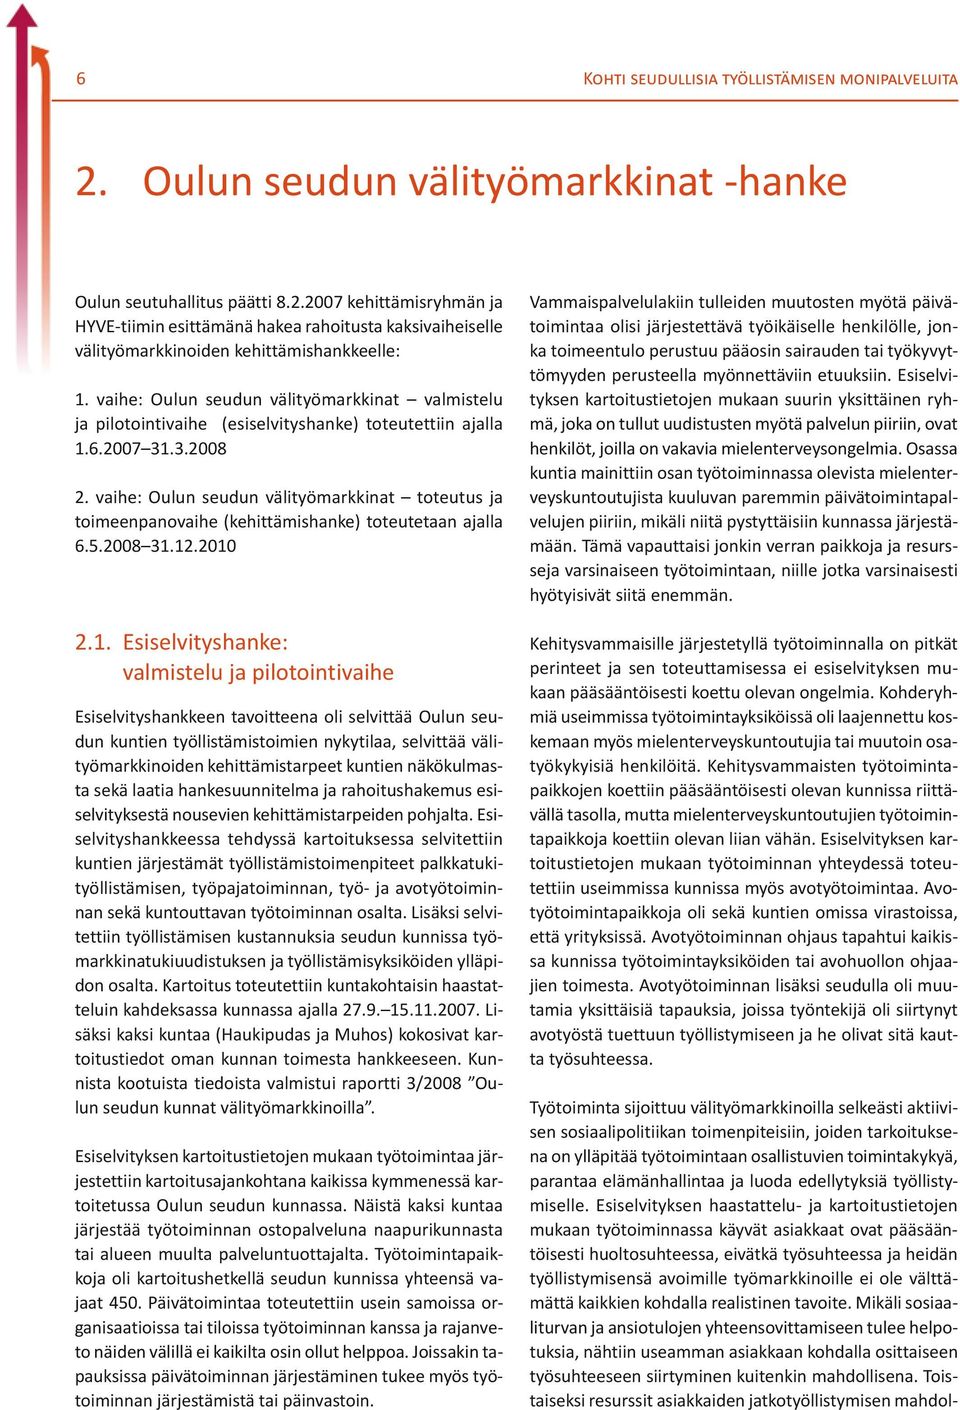 vaihe: Oulun seudun välityömarkkinat toteutus ja toimeenpanovaihe (kehittämishanke) toteutetaan ajalla 6.5.2008 31.